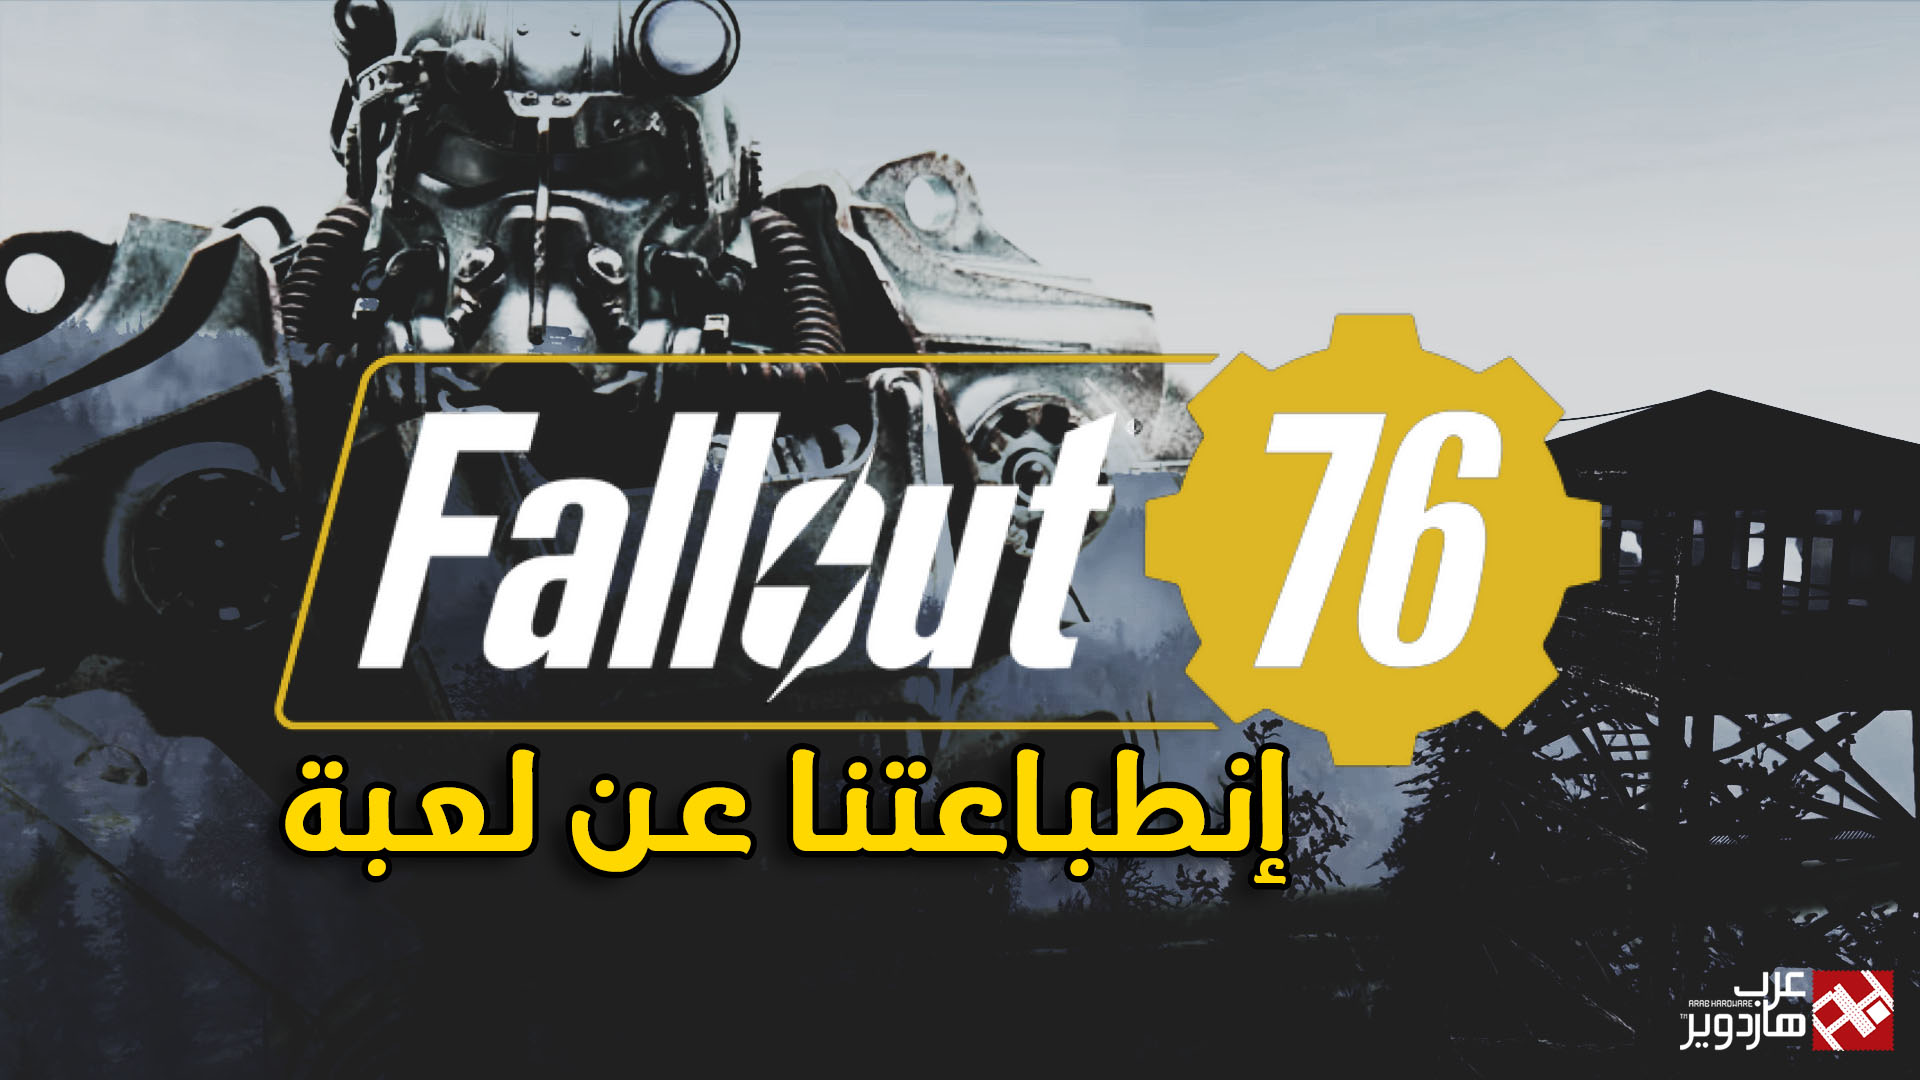 إنطباعتنا عن اللعبة المُحبطة Fallout 76